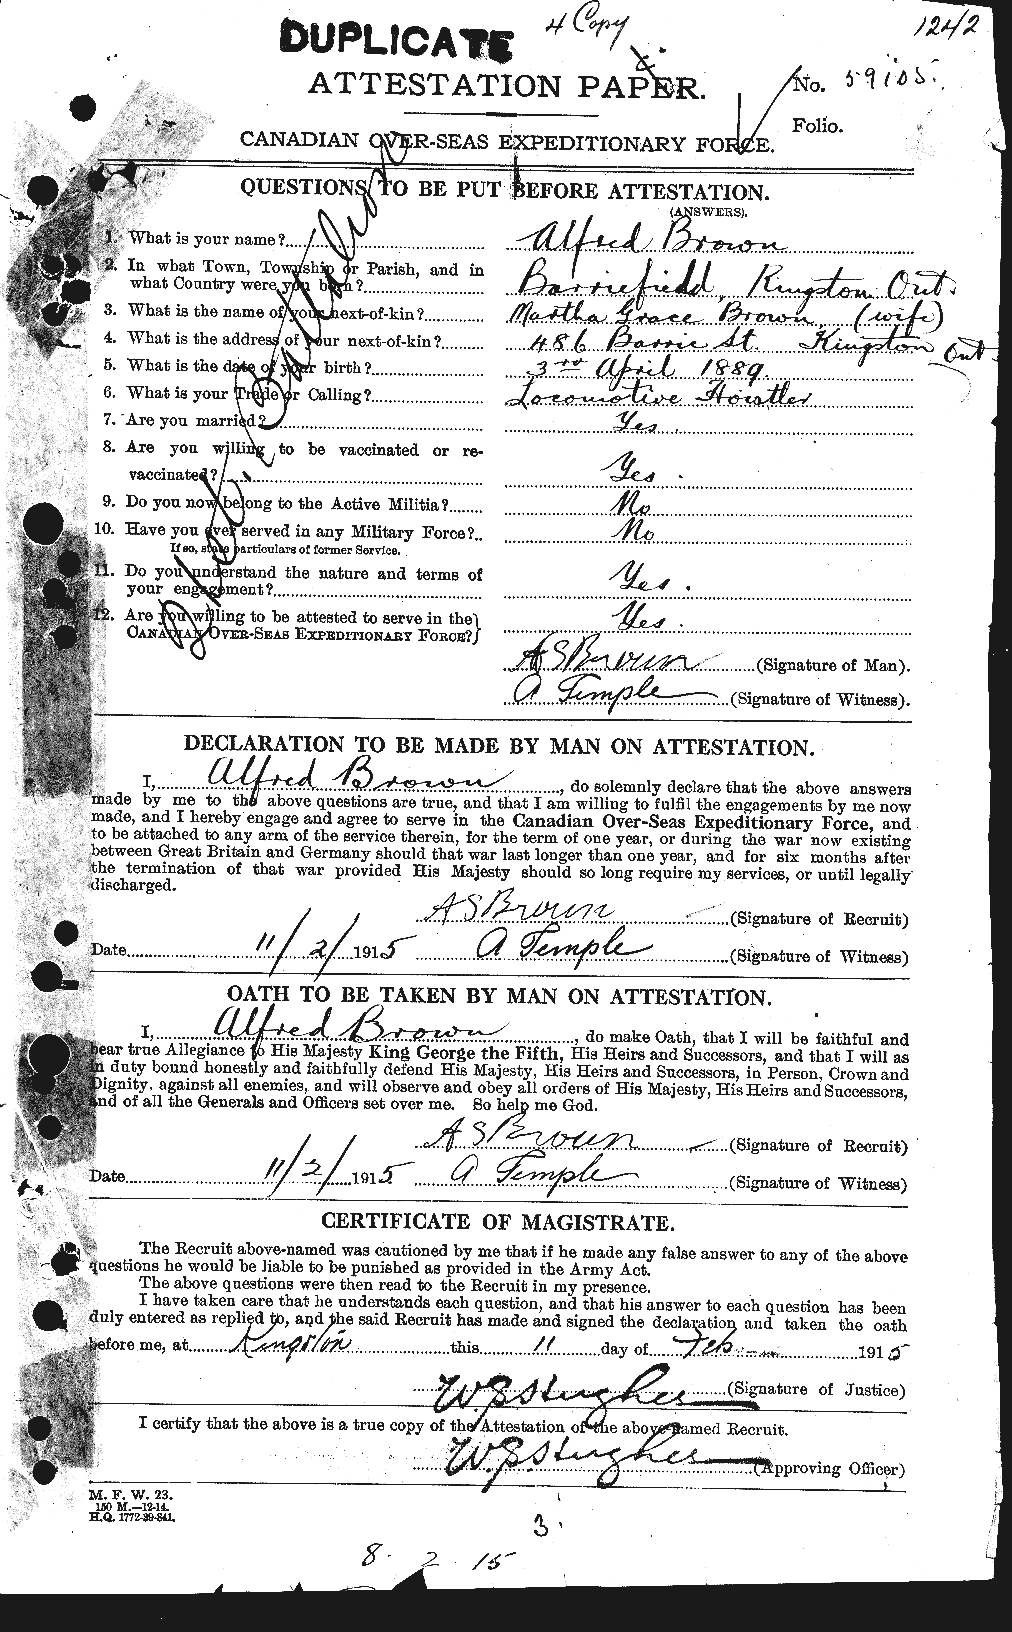 Dossiers du Personnel de la Première Guerre mondiale - CEC 266987a